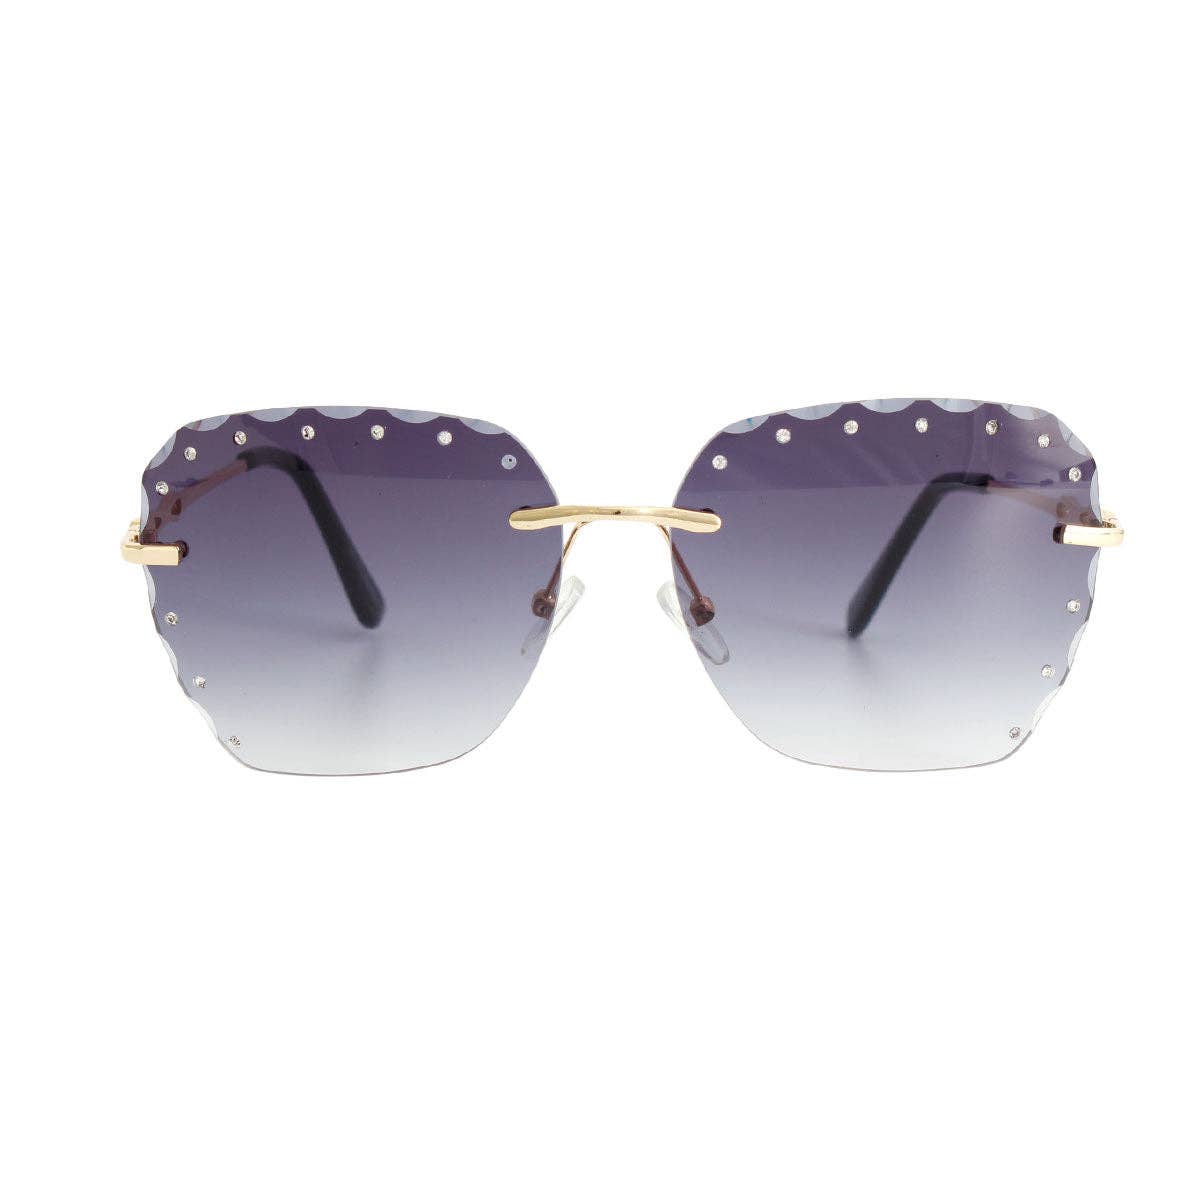 Black Diamond Cut Sunglasses: 5.65 x 2.15 inches / Black / Multi Tone